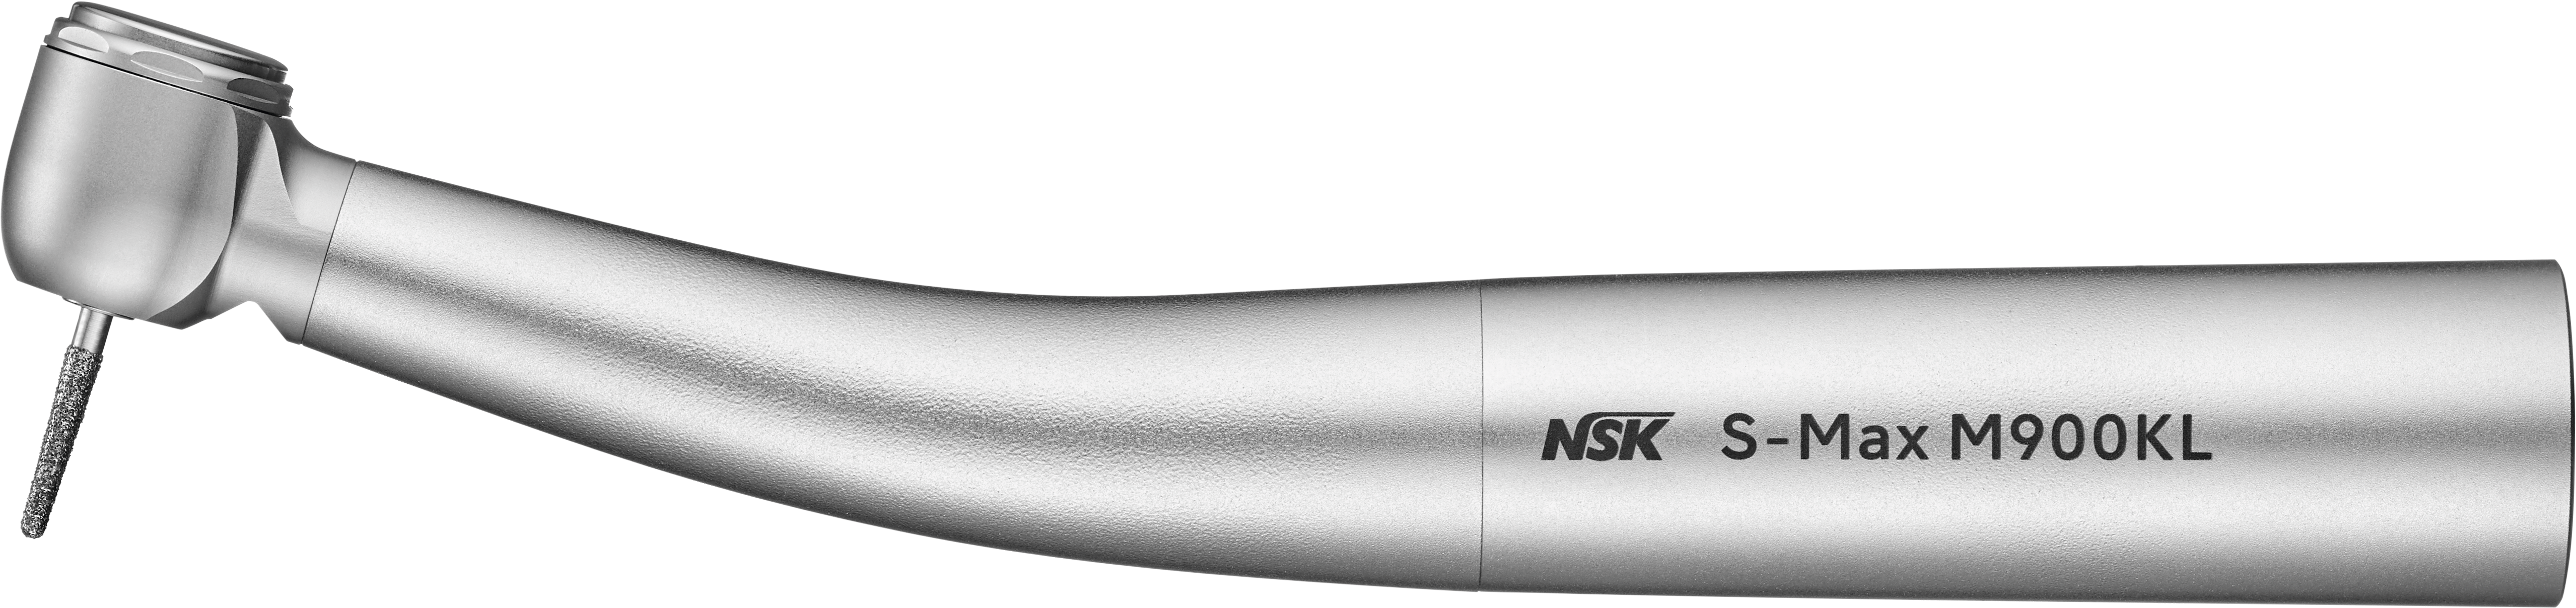 Array - Turbina NSK S-Max M900KL -Att.Kavo